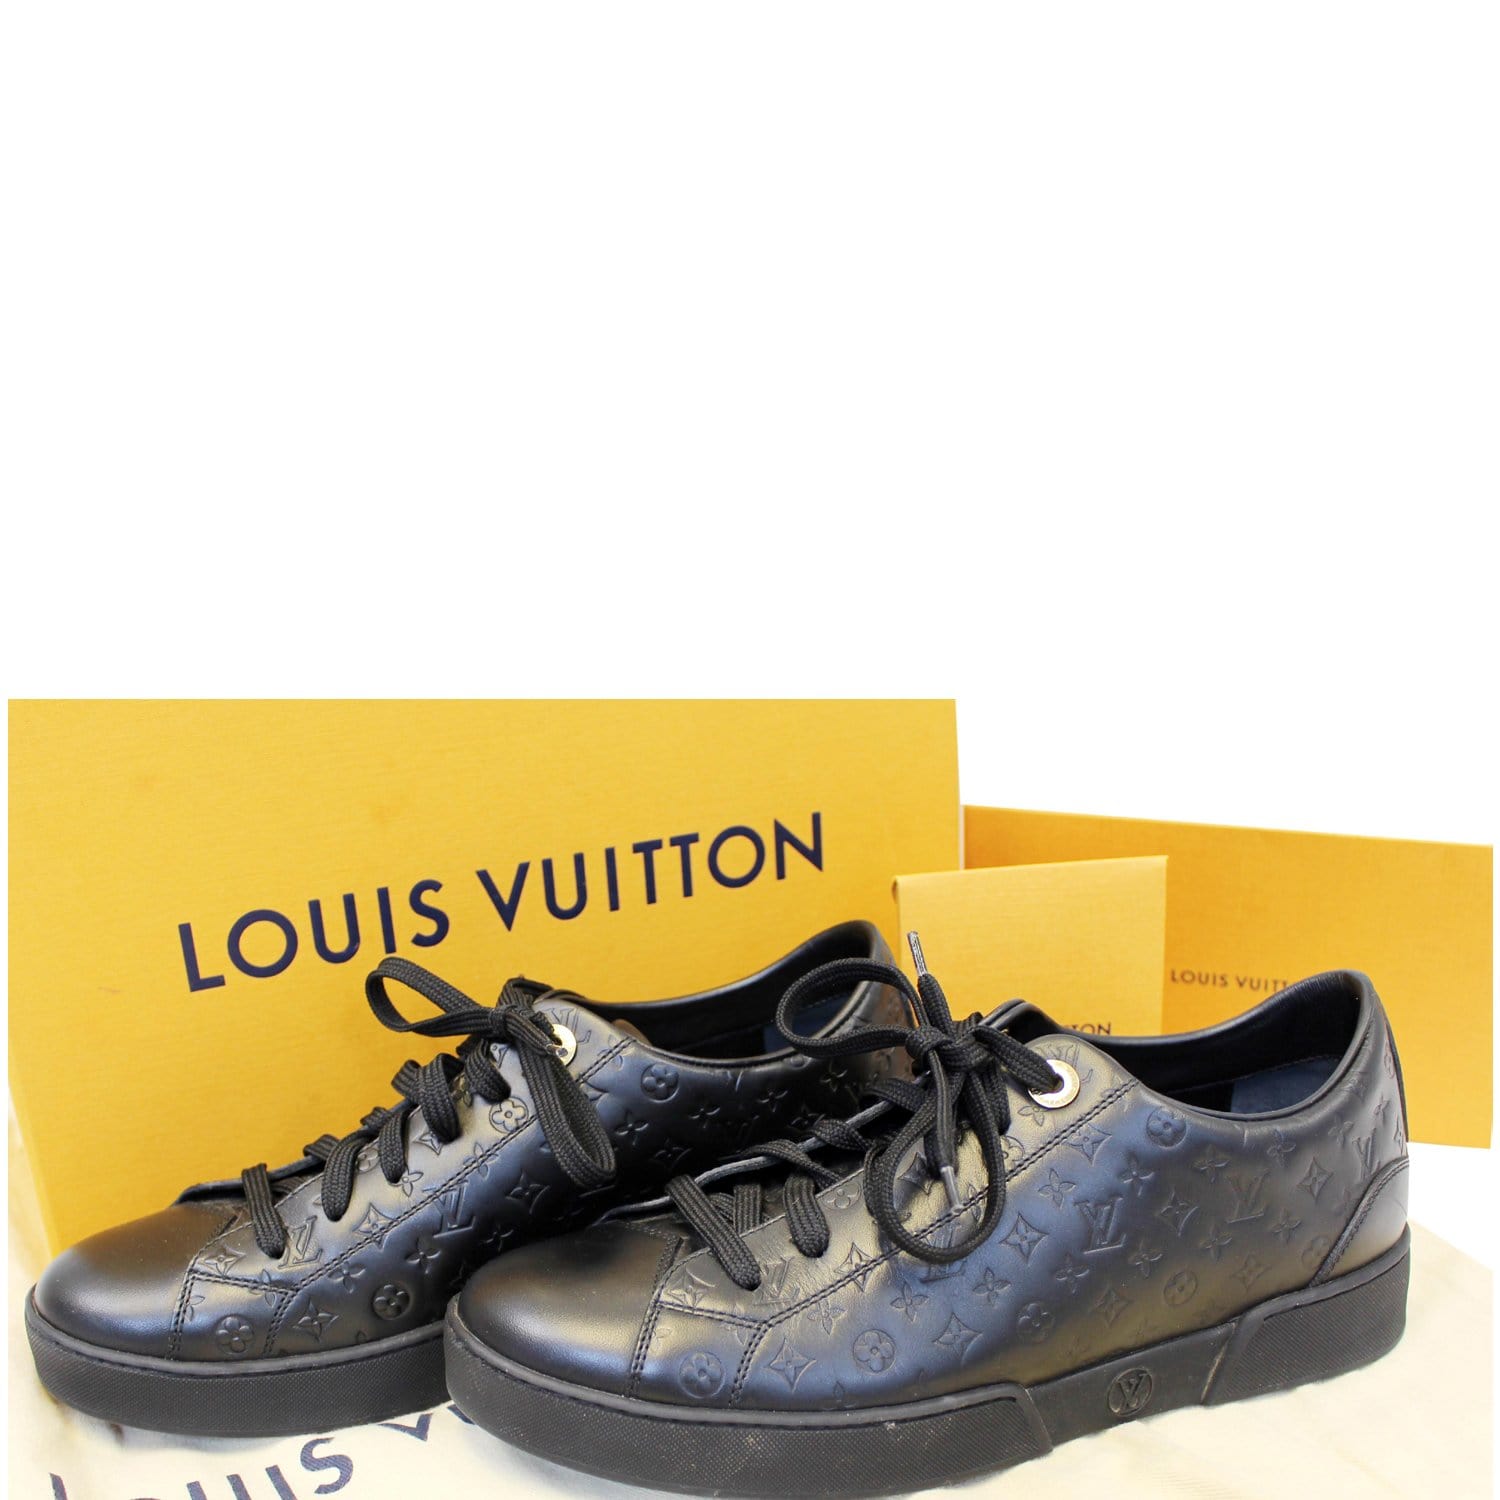 Tiểu Vy mặc quần Louis Vuitton gần 40 triệu đồng